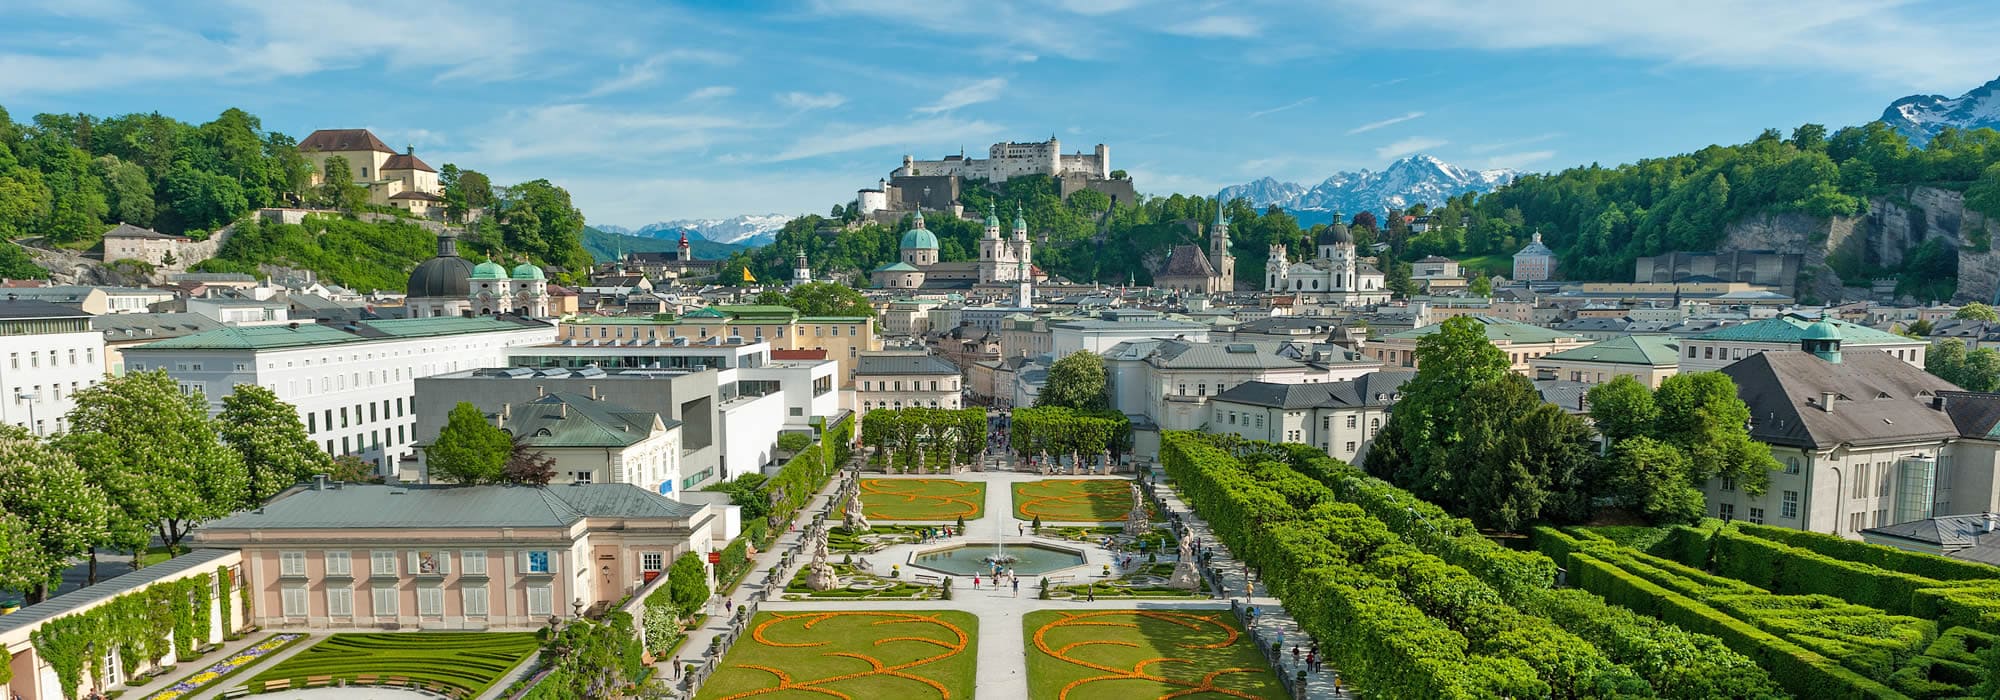 Ausflug in die Festspielstadt Salzburg - Burg Hohensalzburg und Mirabellgarten